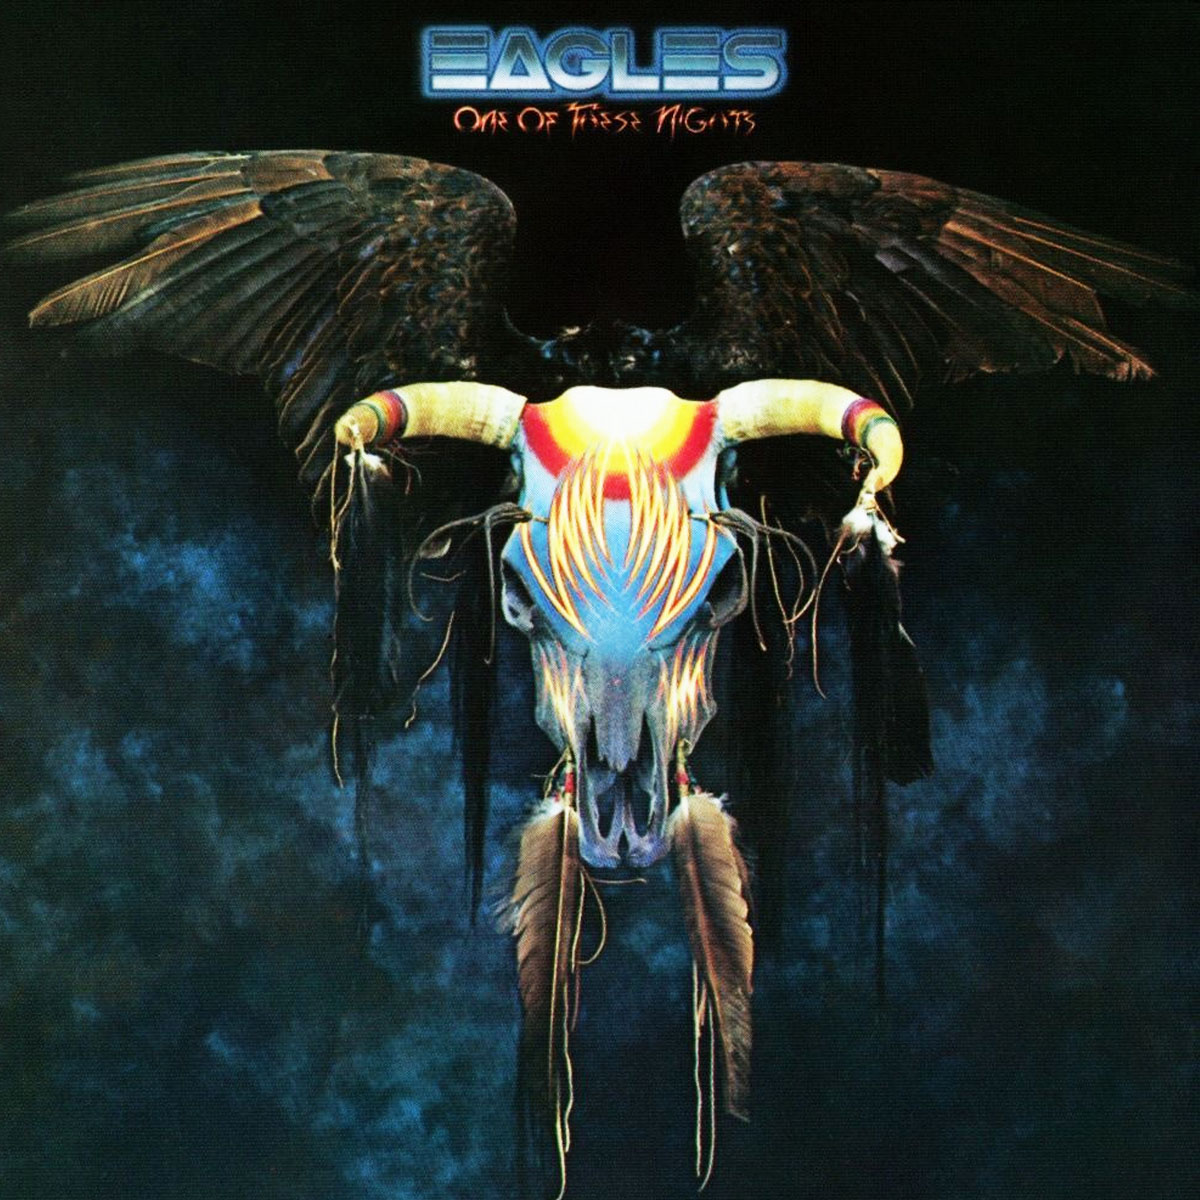 Uma destas Noites" (1975) por The Eagles